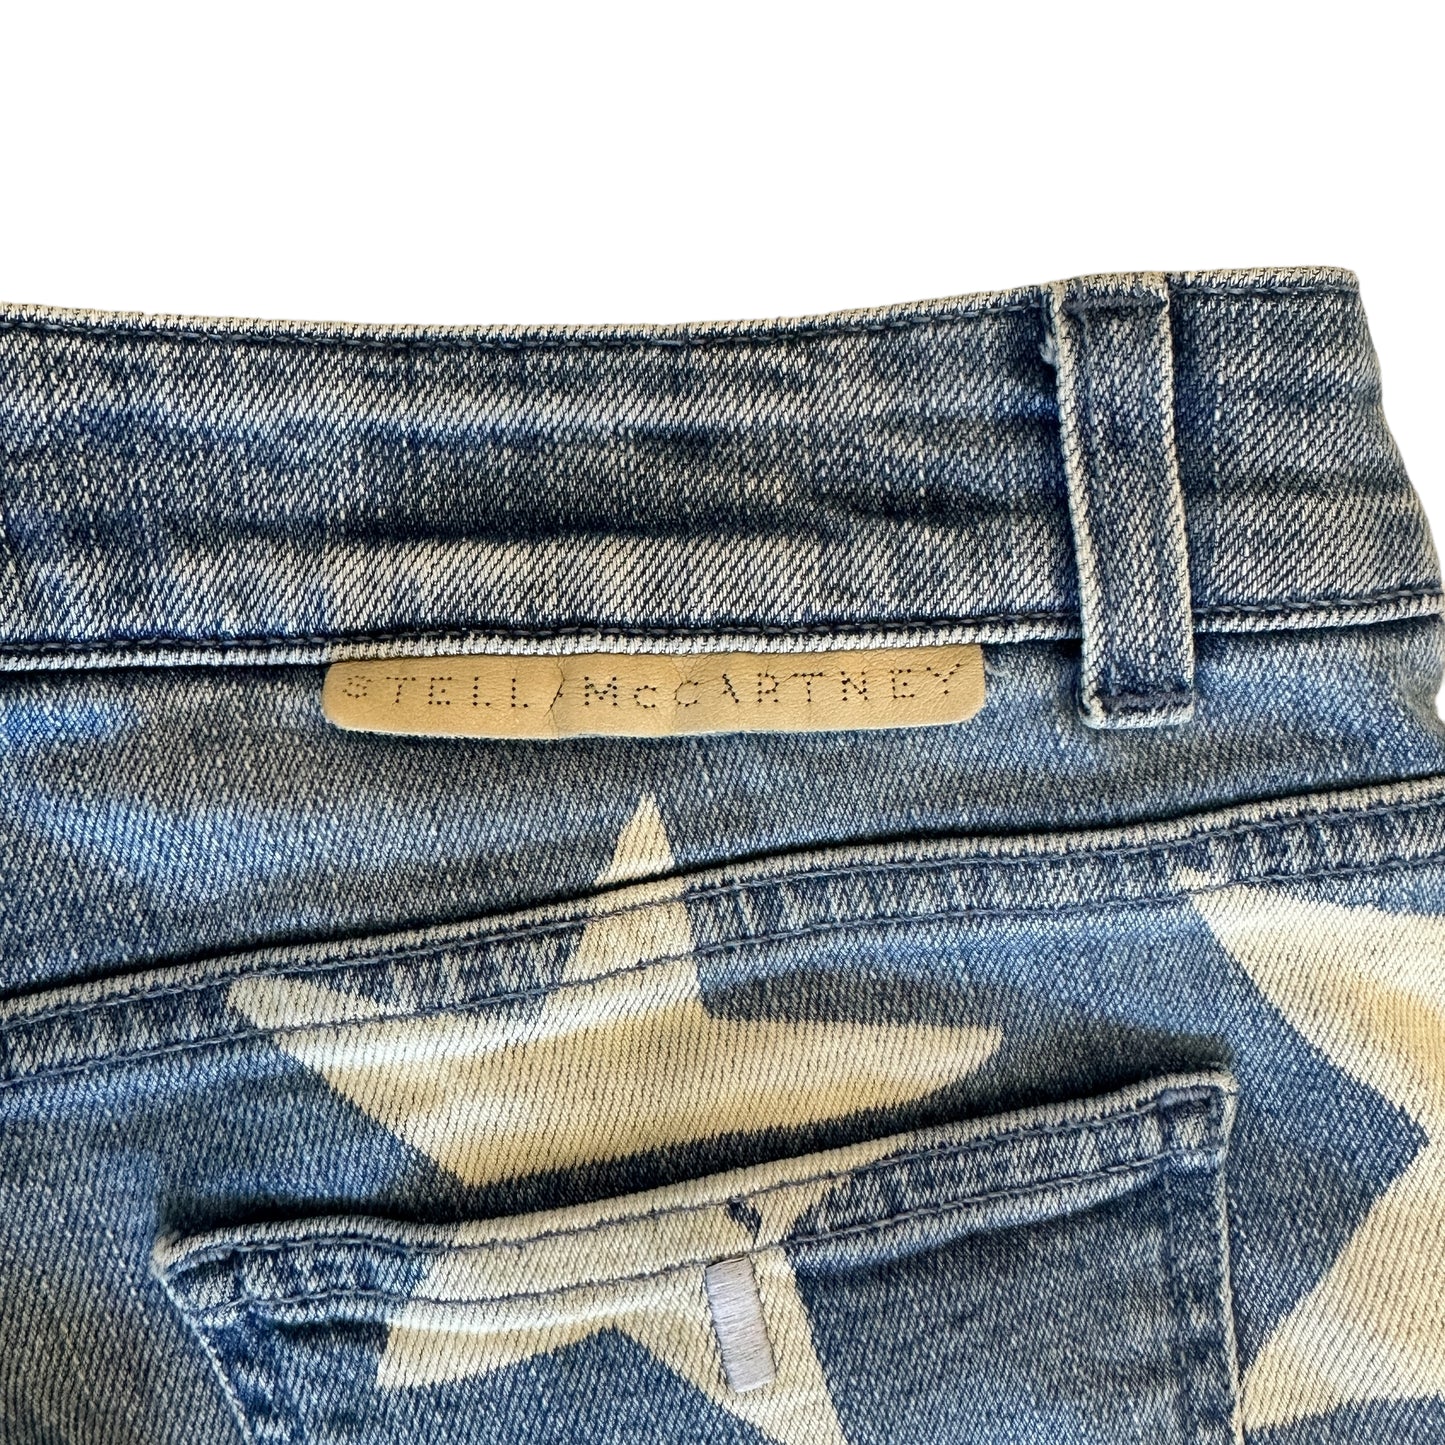 Blue Jeans w/Stars - 30